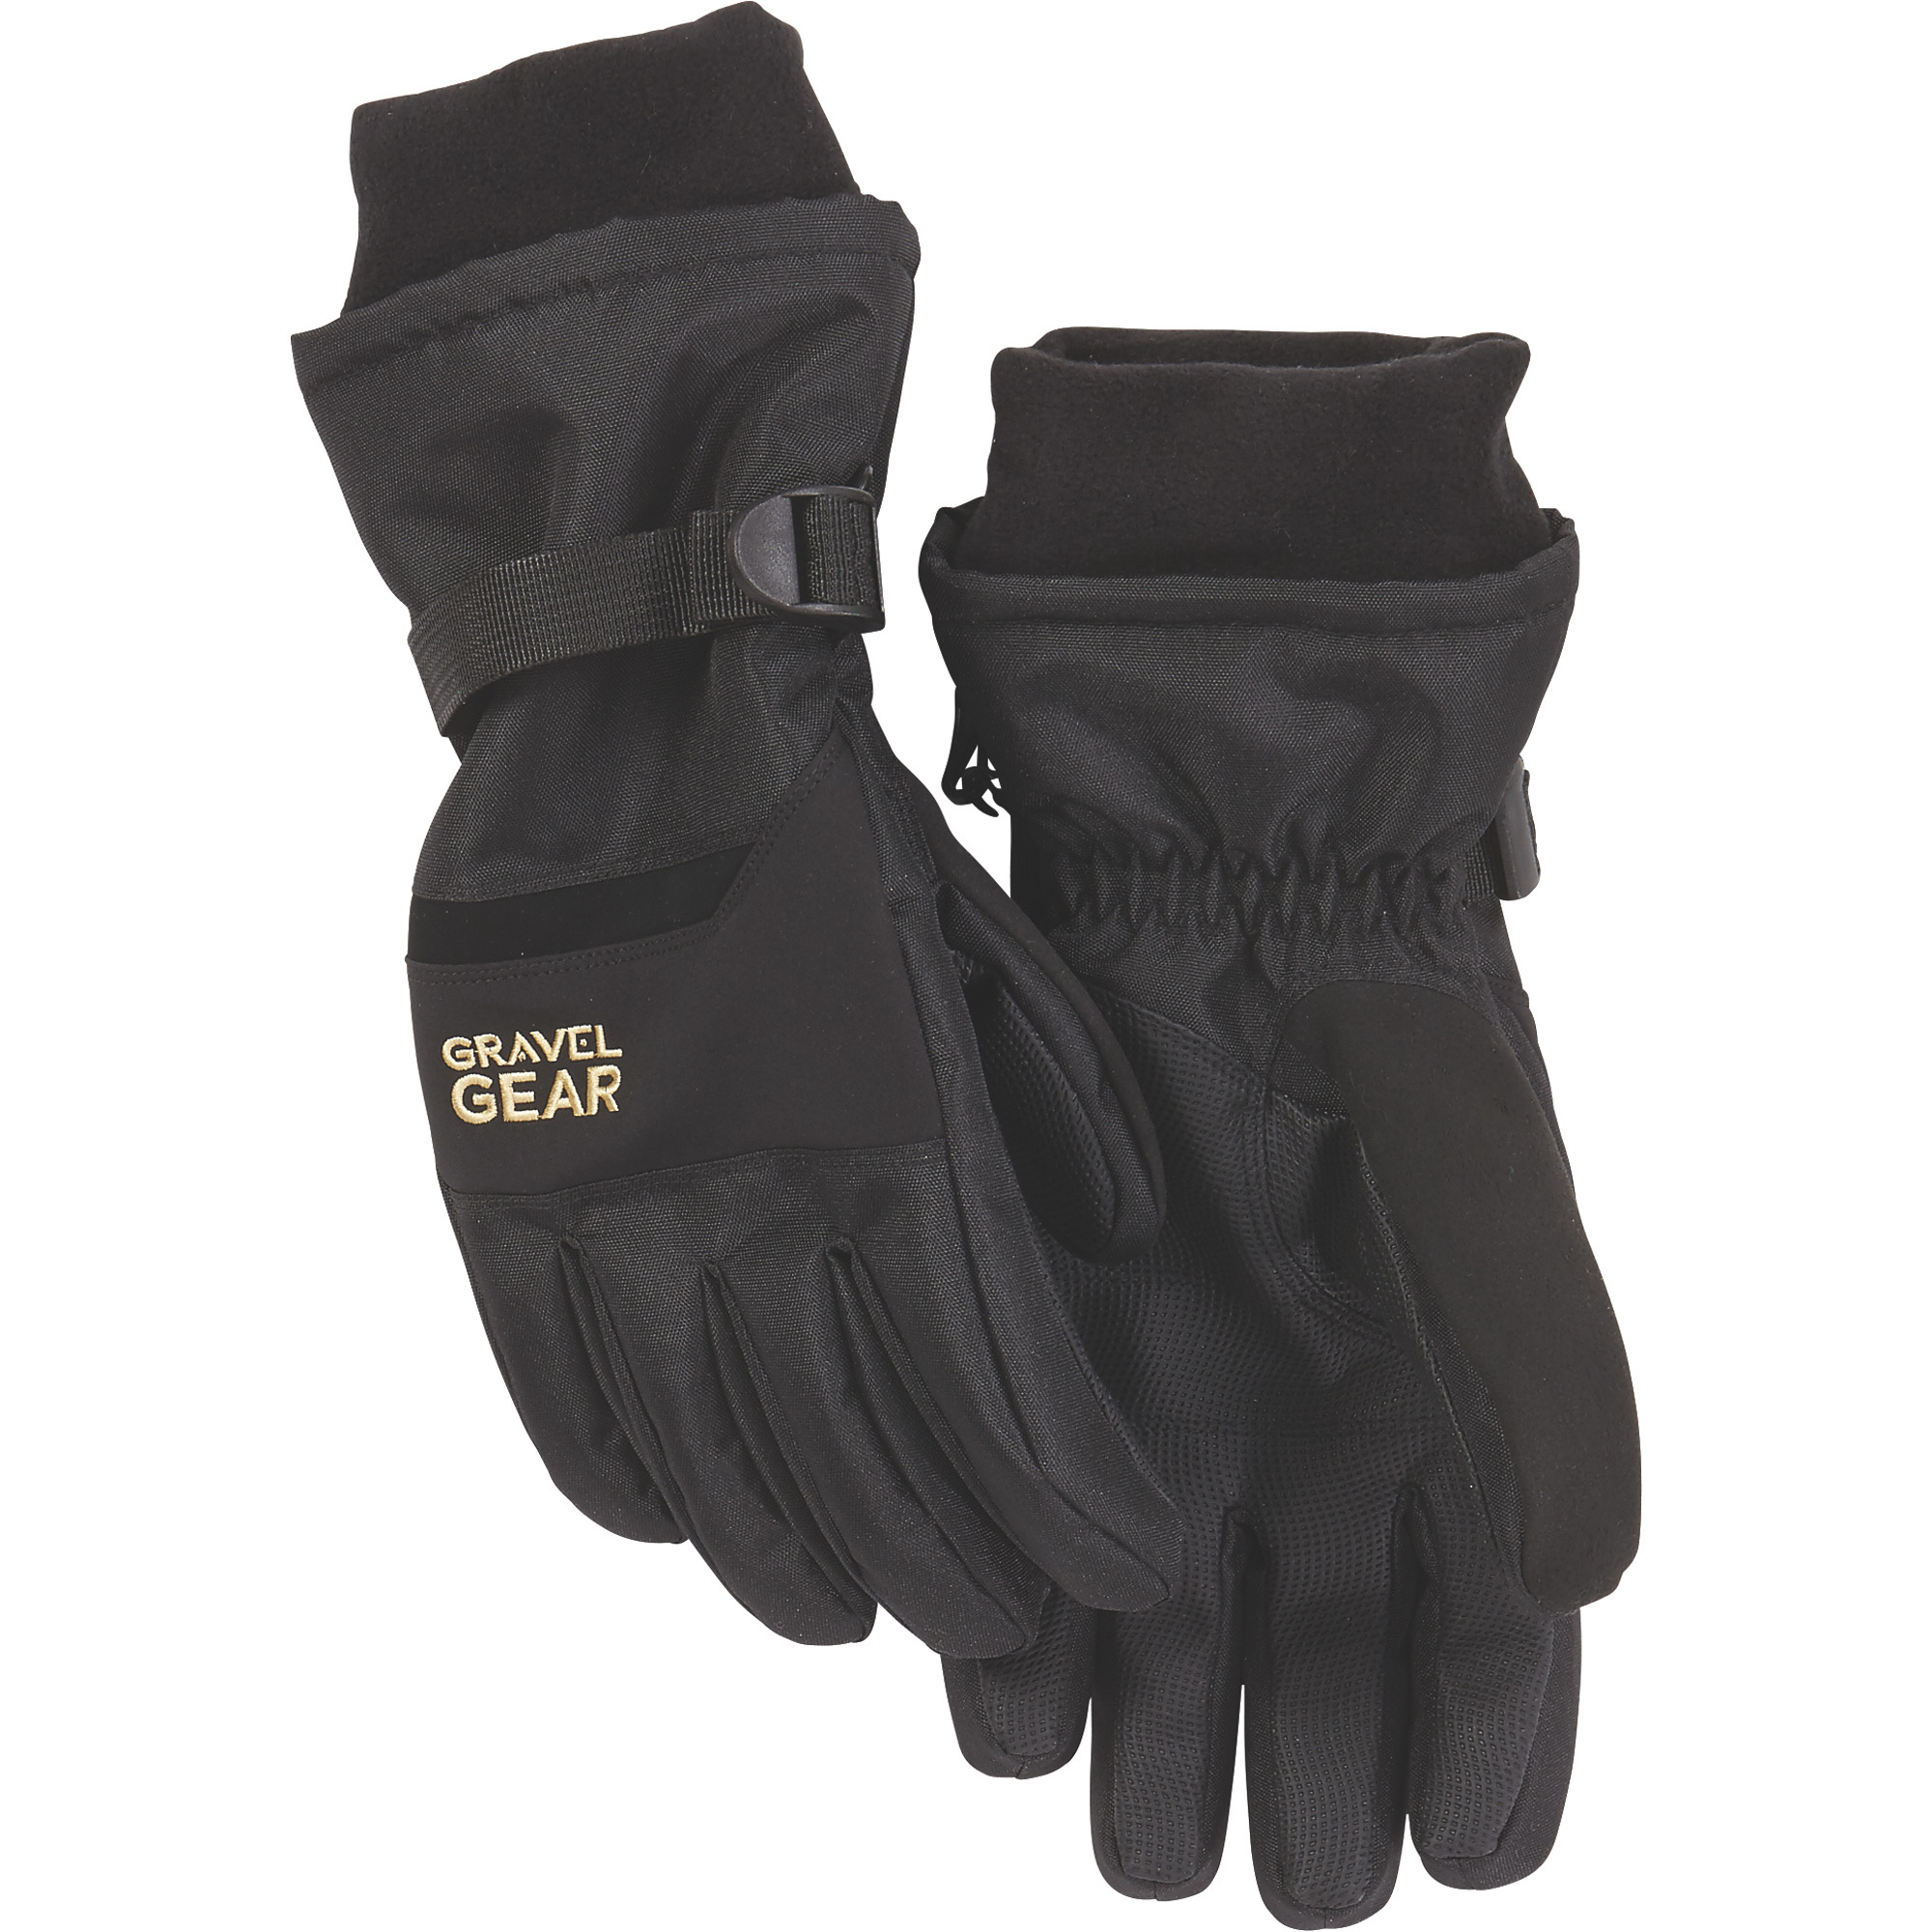 Gravel Gear Men's Waterproof Winter Gloves â Black, Large